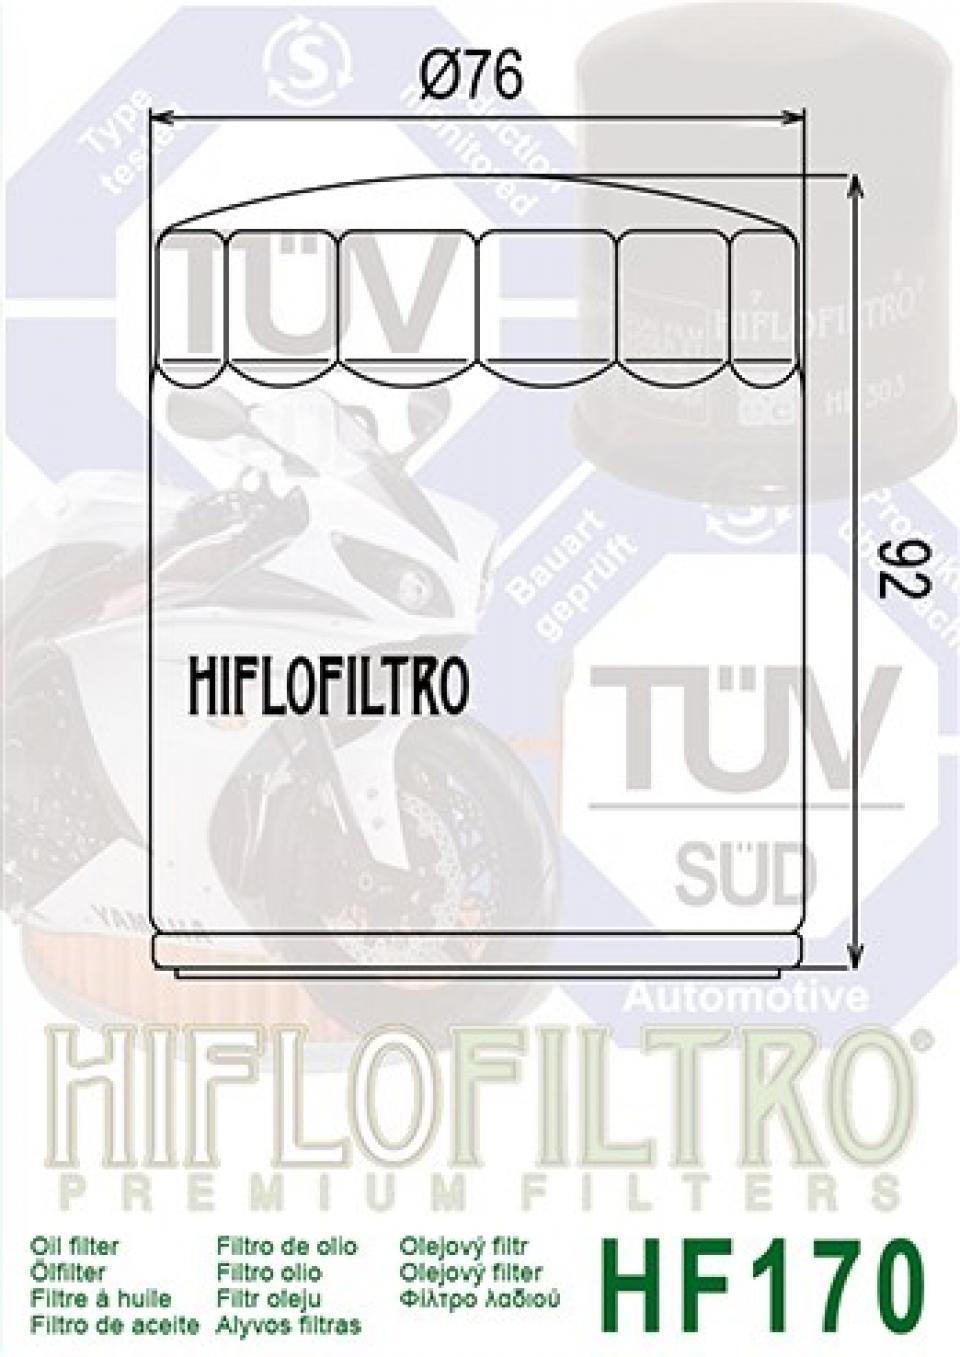 Filtre à huile Hiflofiltro pour Moto Buell 1200 S1 Lighting 1997 à 1999 Neuf